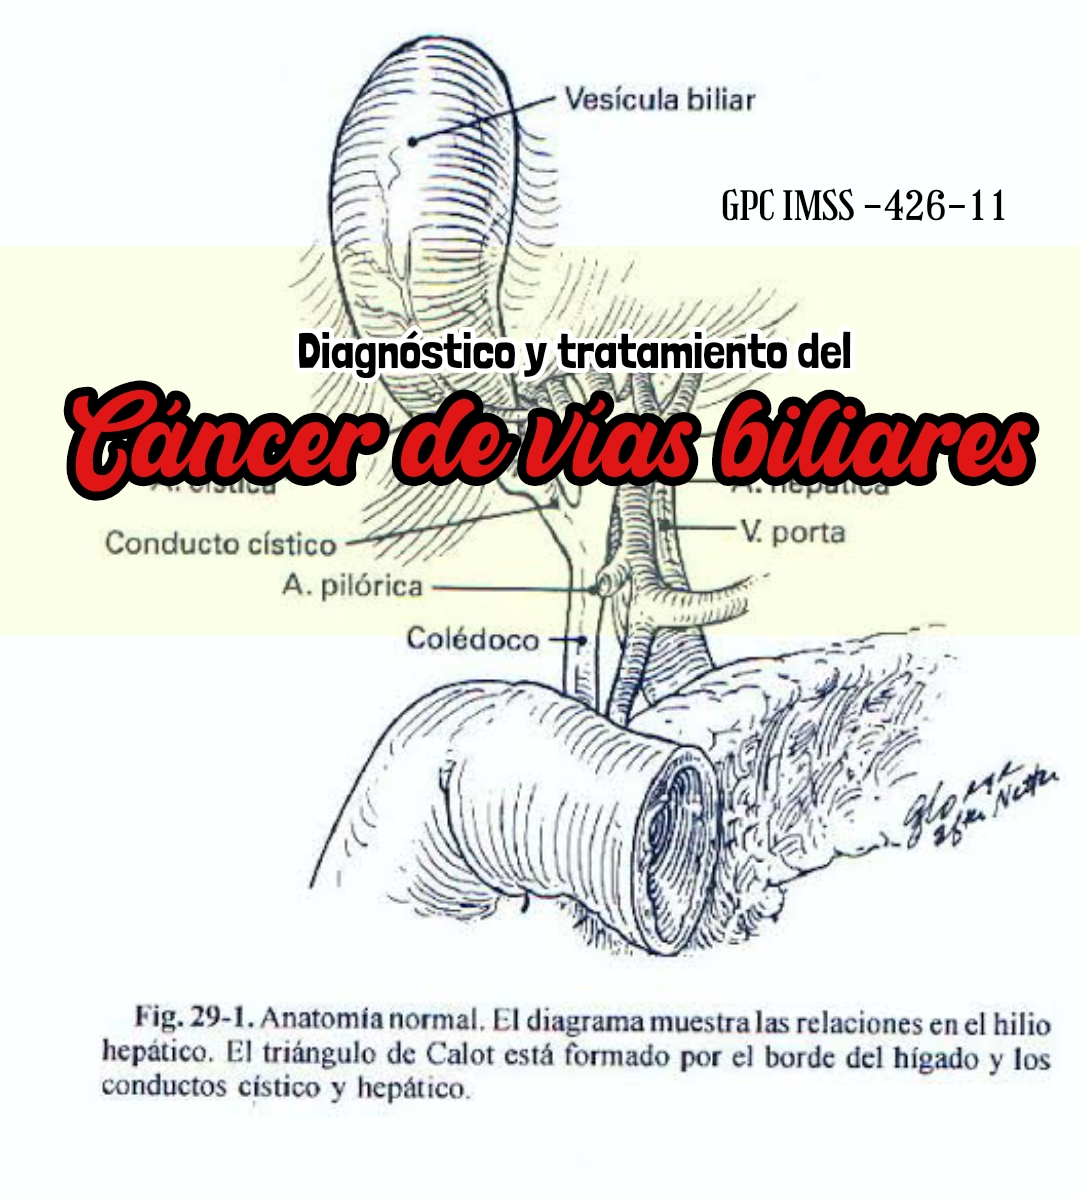 CANCER DE VIAS BILIARES Dr GALVAN